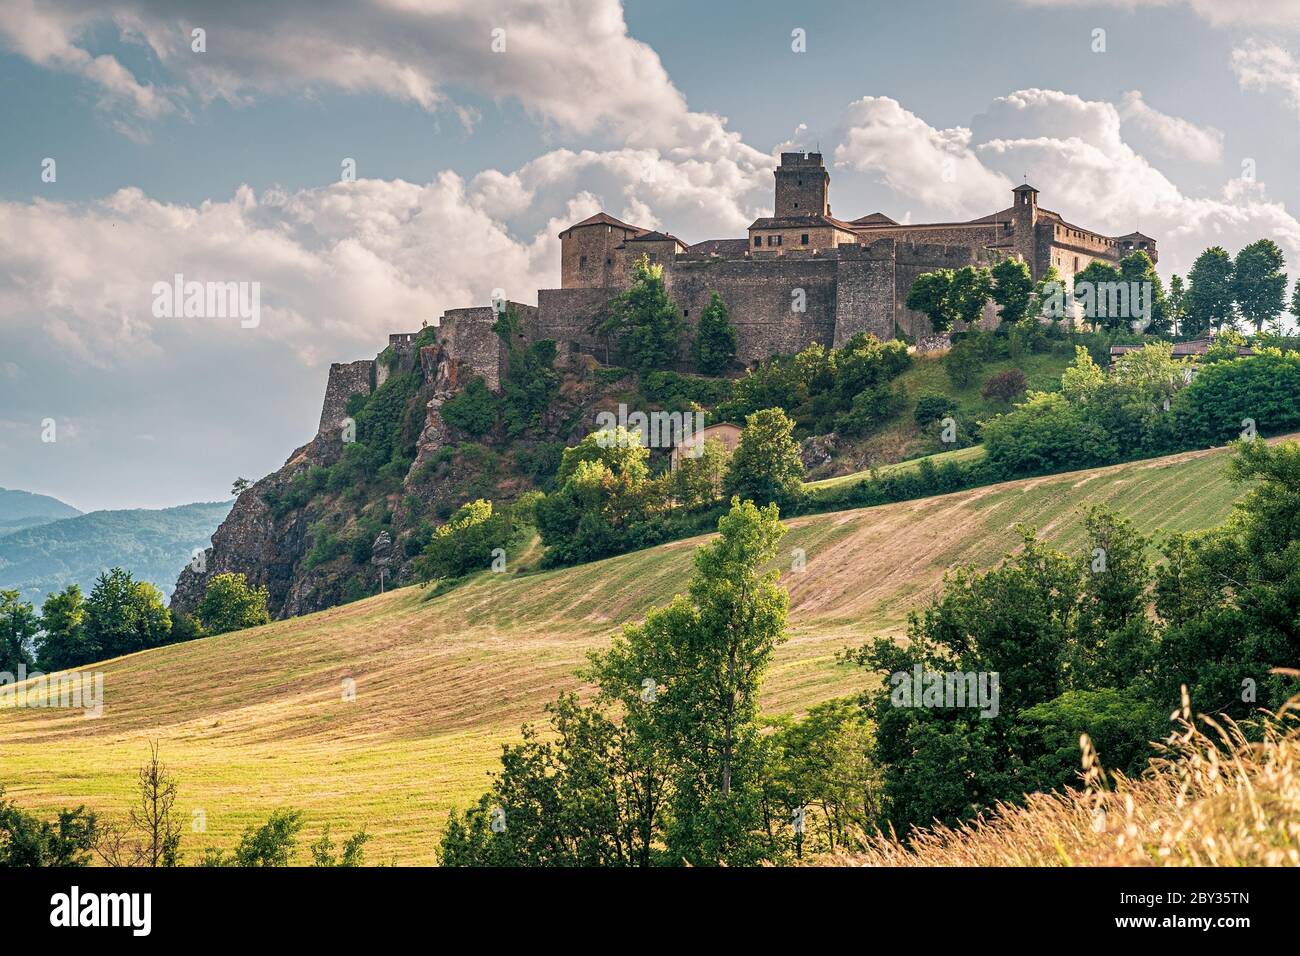 Vue sur le côté nord du château de Bardi. Province de Parme, Emilie-Romagne, Italie. Banque D'Images